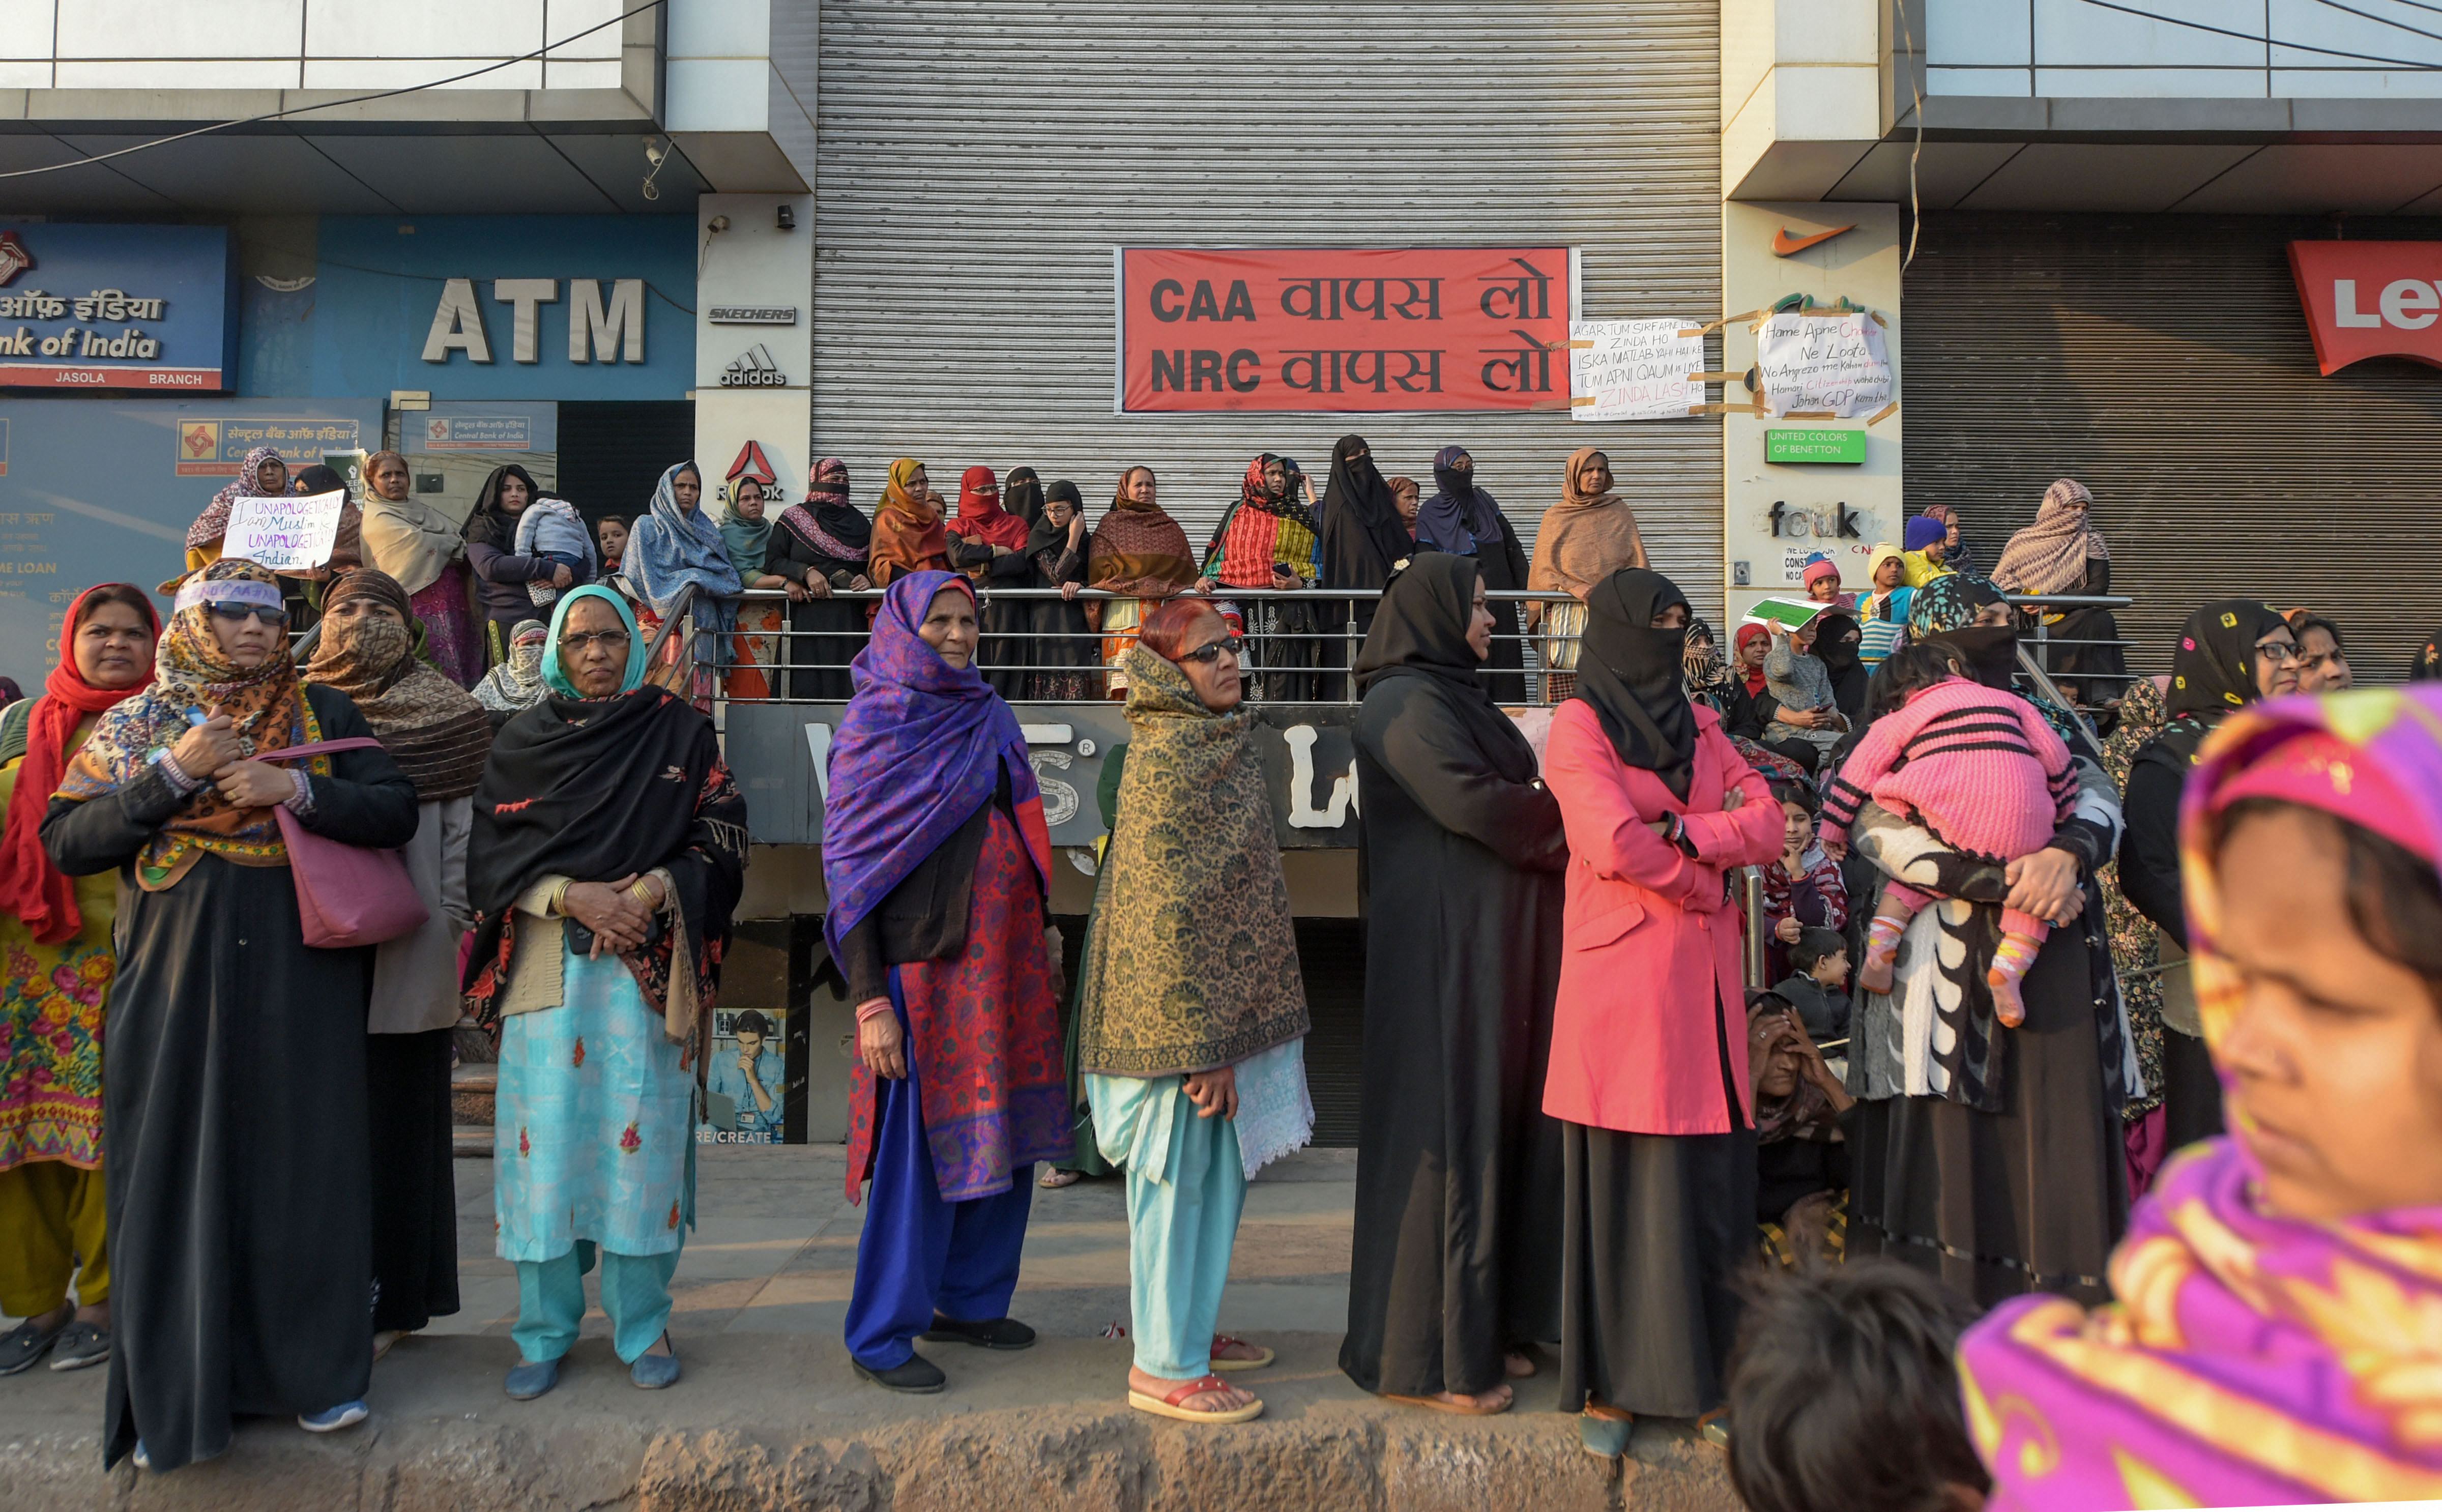 شاہین باغ میں ۱۱ جنوری کو شہریت ترمیمی قانون اور این آر سی کیخلاف احتجاج ۔ تصویر : پی ٹی آئی